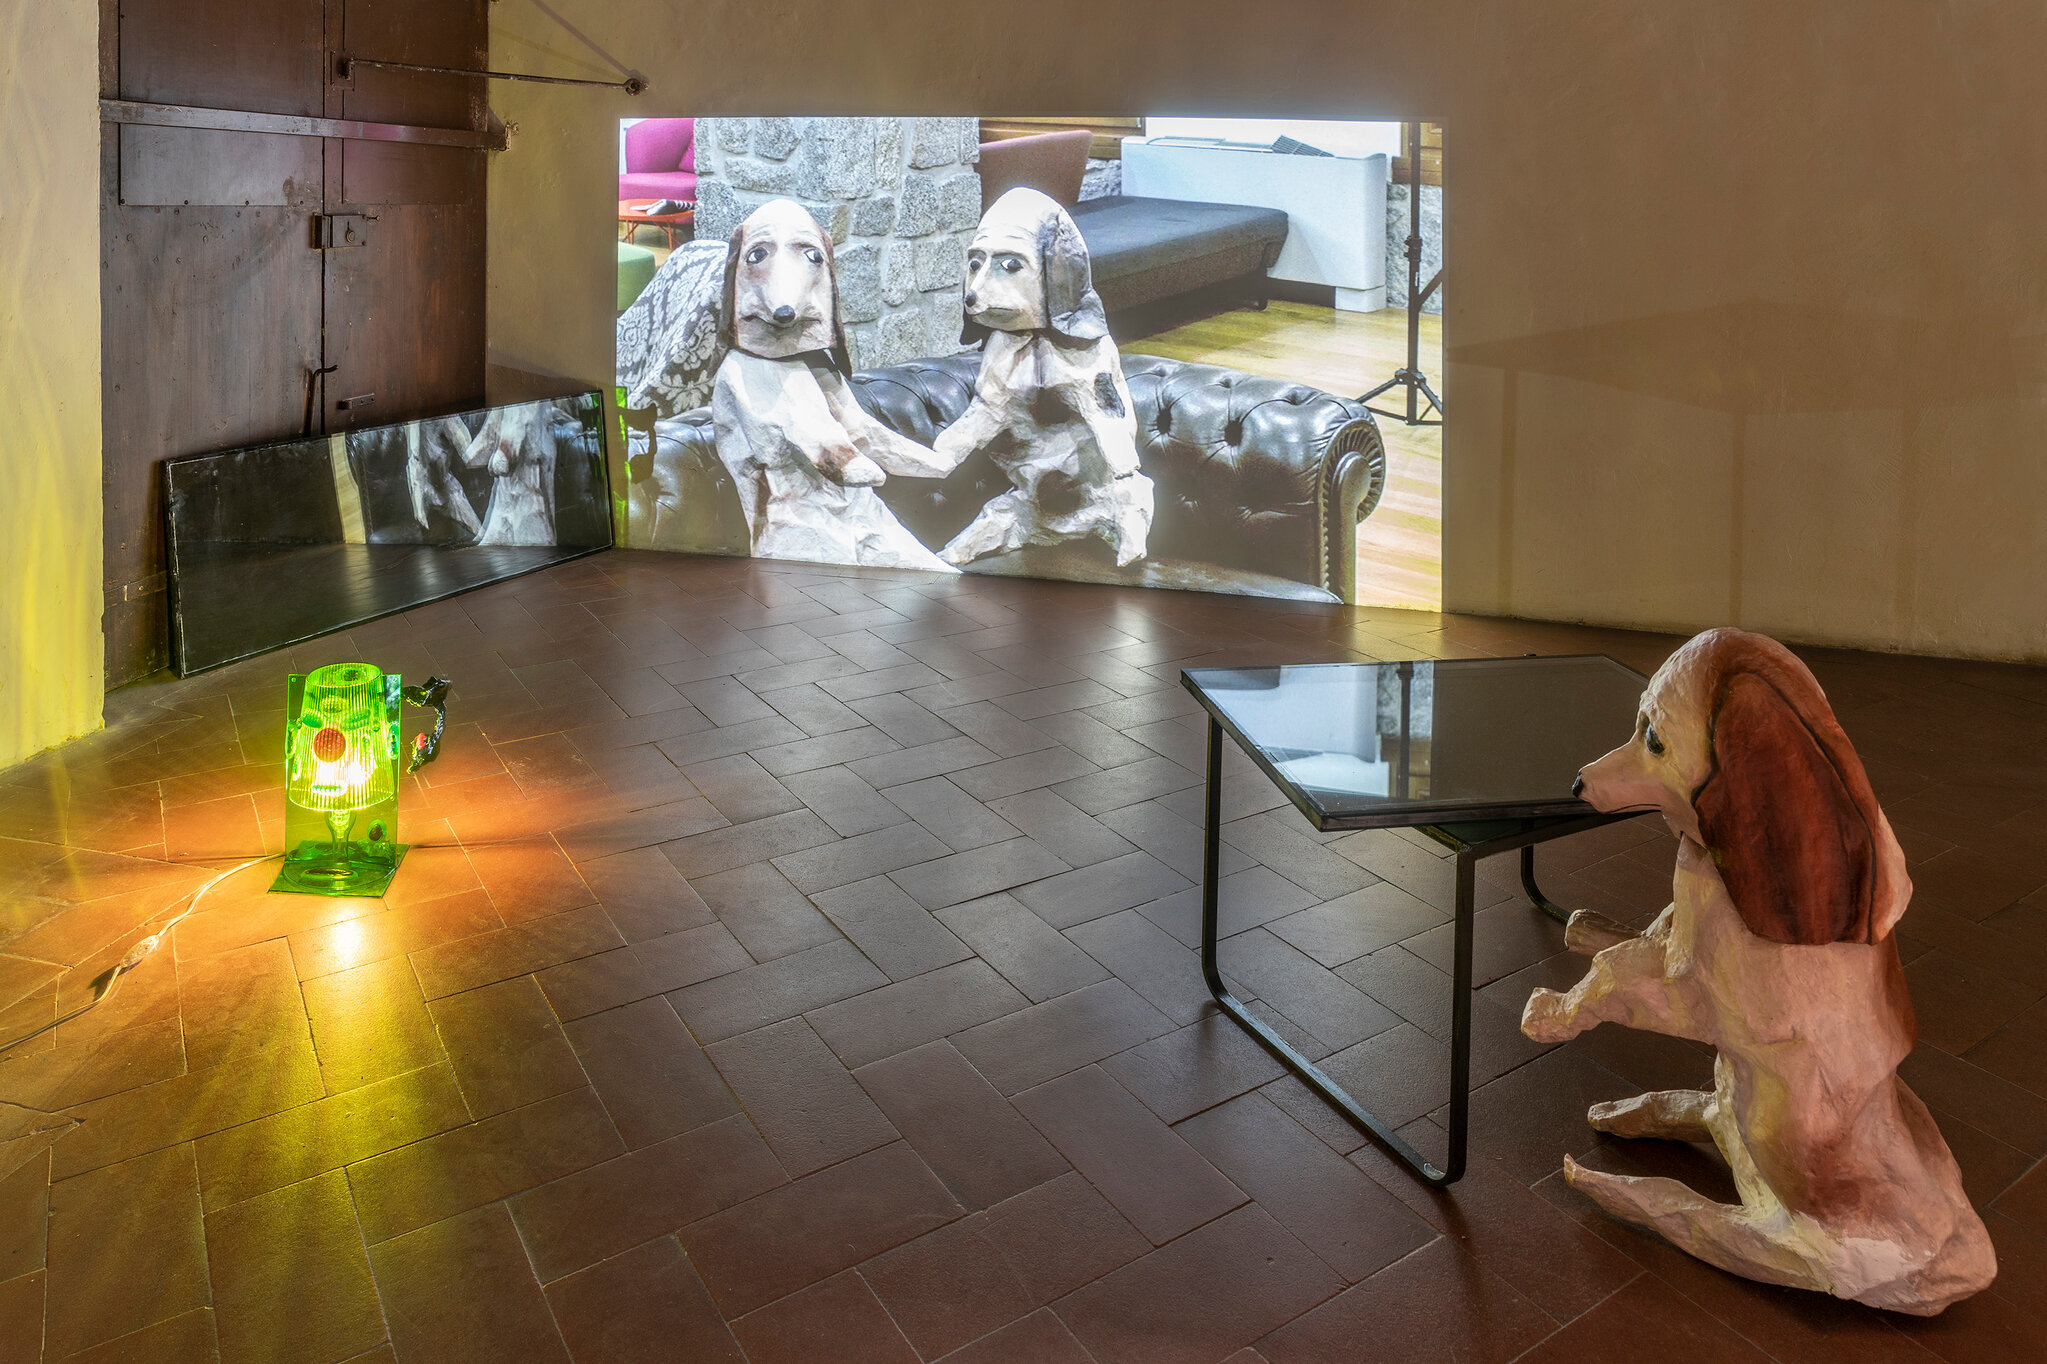 Le Amiche, Casa Masaccio Centro per l’Arte Contemporanea, San Giovanni Valdarno, 2019